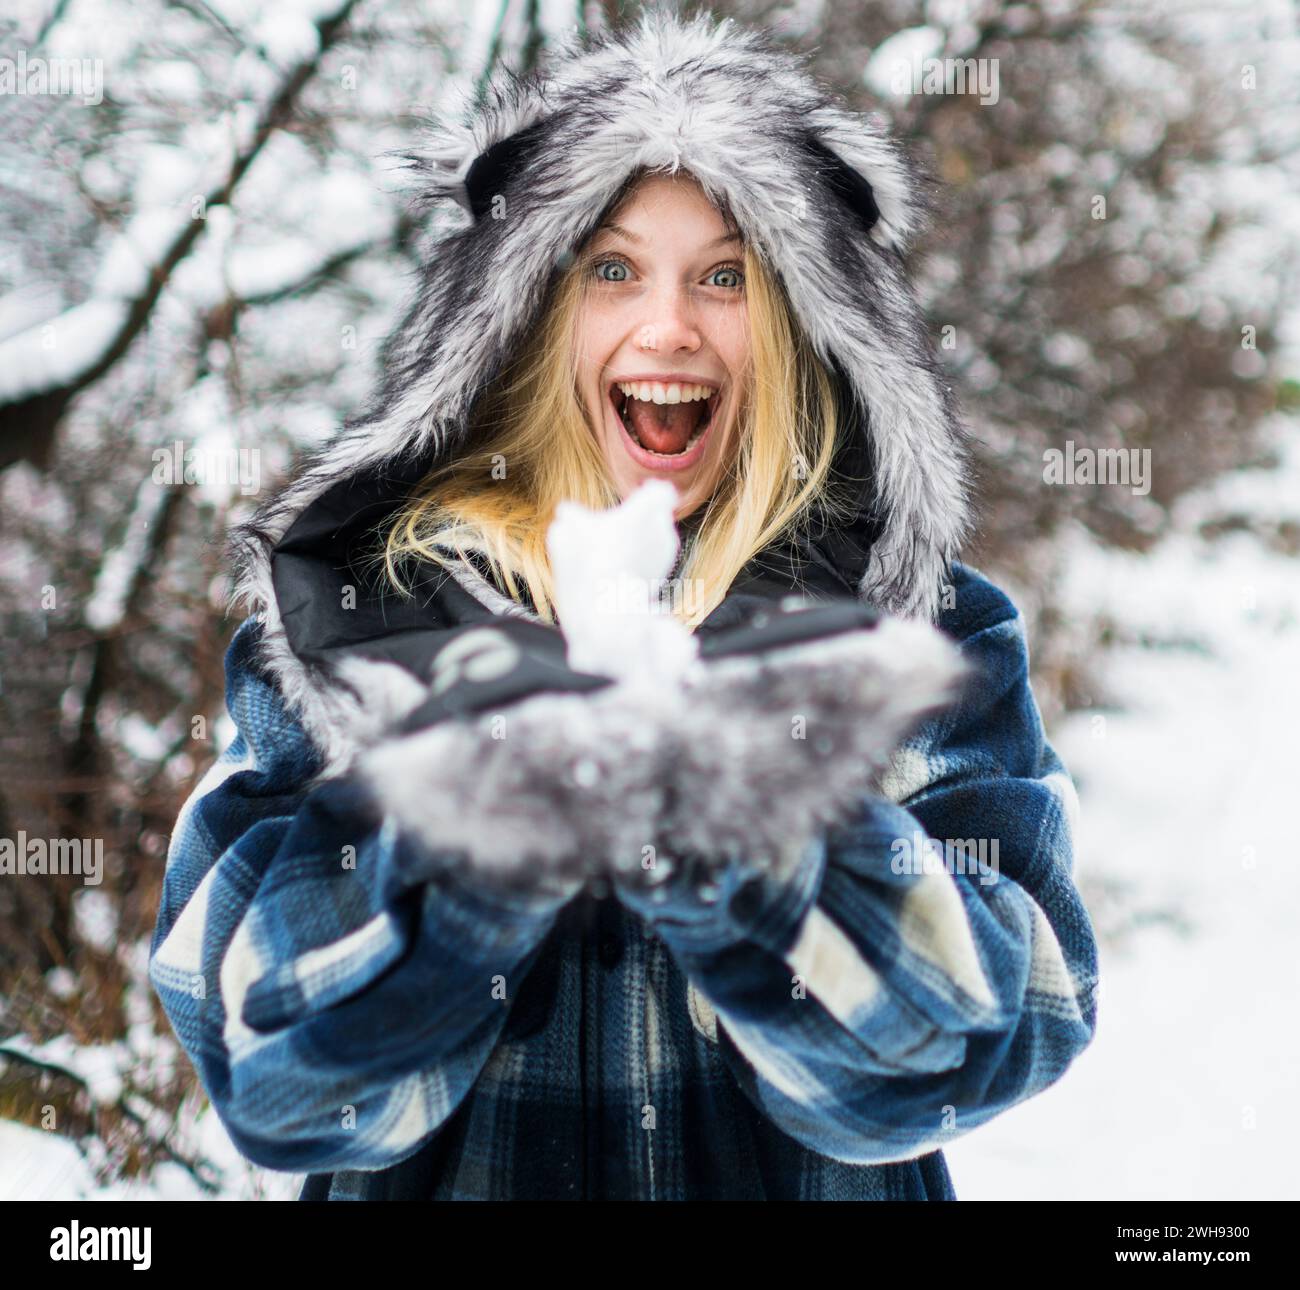 Winterzeit. Wintermädchen spielt mit Schnee im Park. Glückliche Frau in warmer Kleidung mit Schneebälle. Schneebedecktes Wetter. Blondes Mädchen in kariertem Mantel, Pelzmütze und Stockfoto